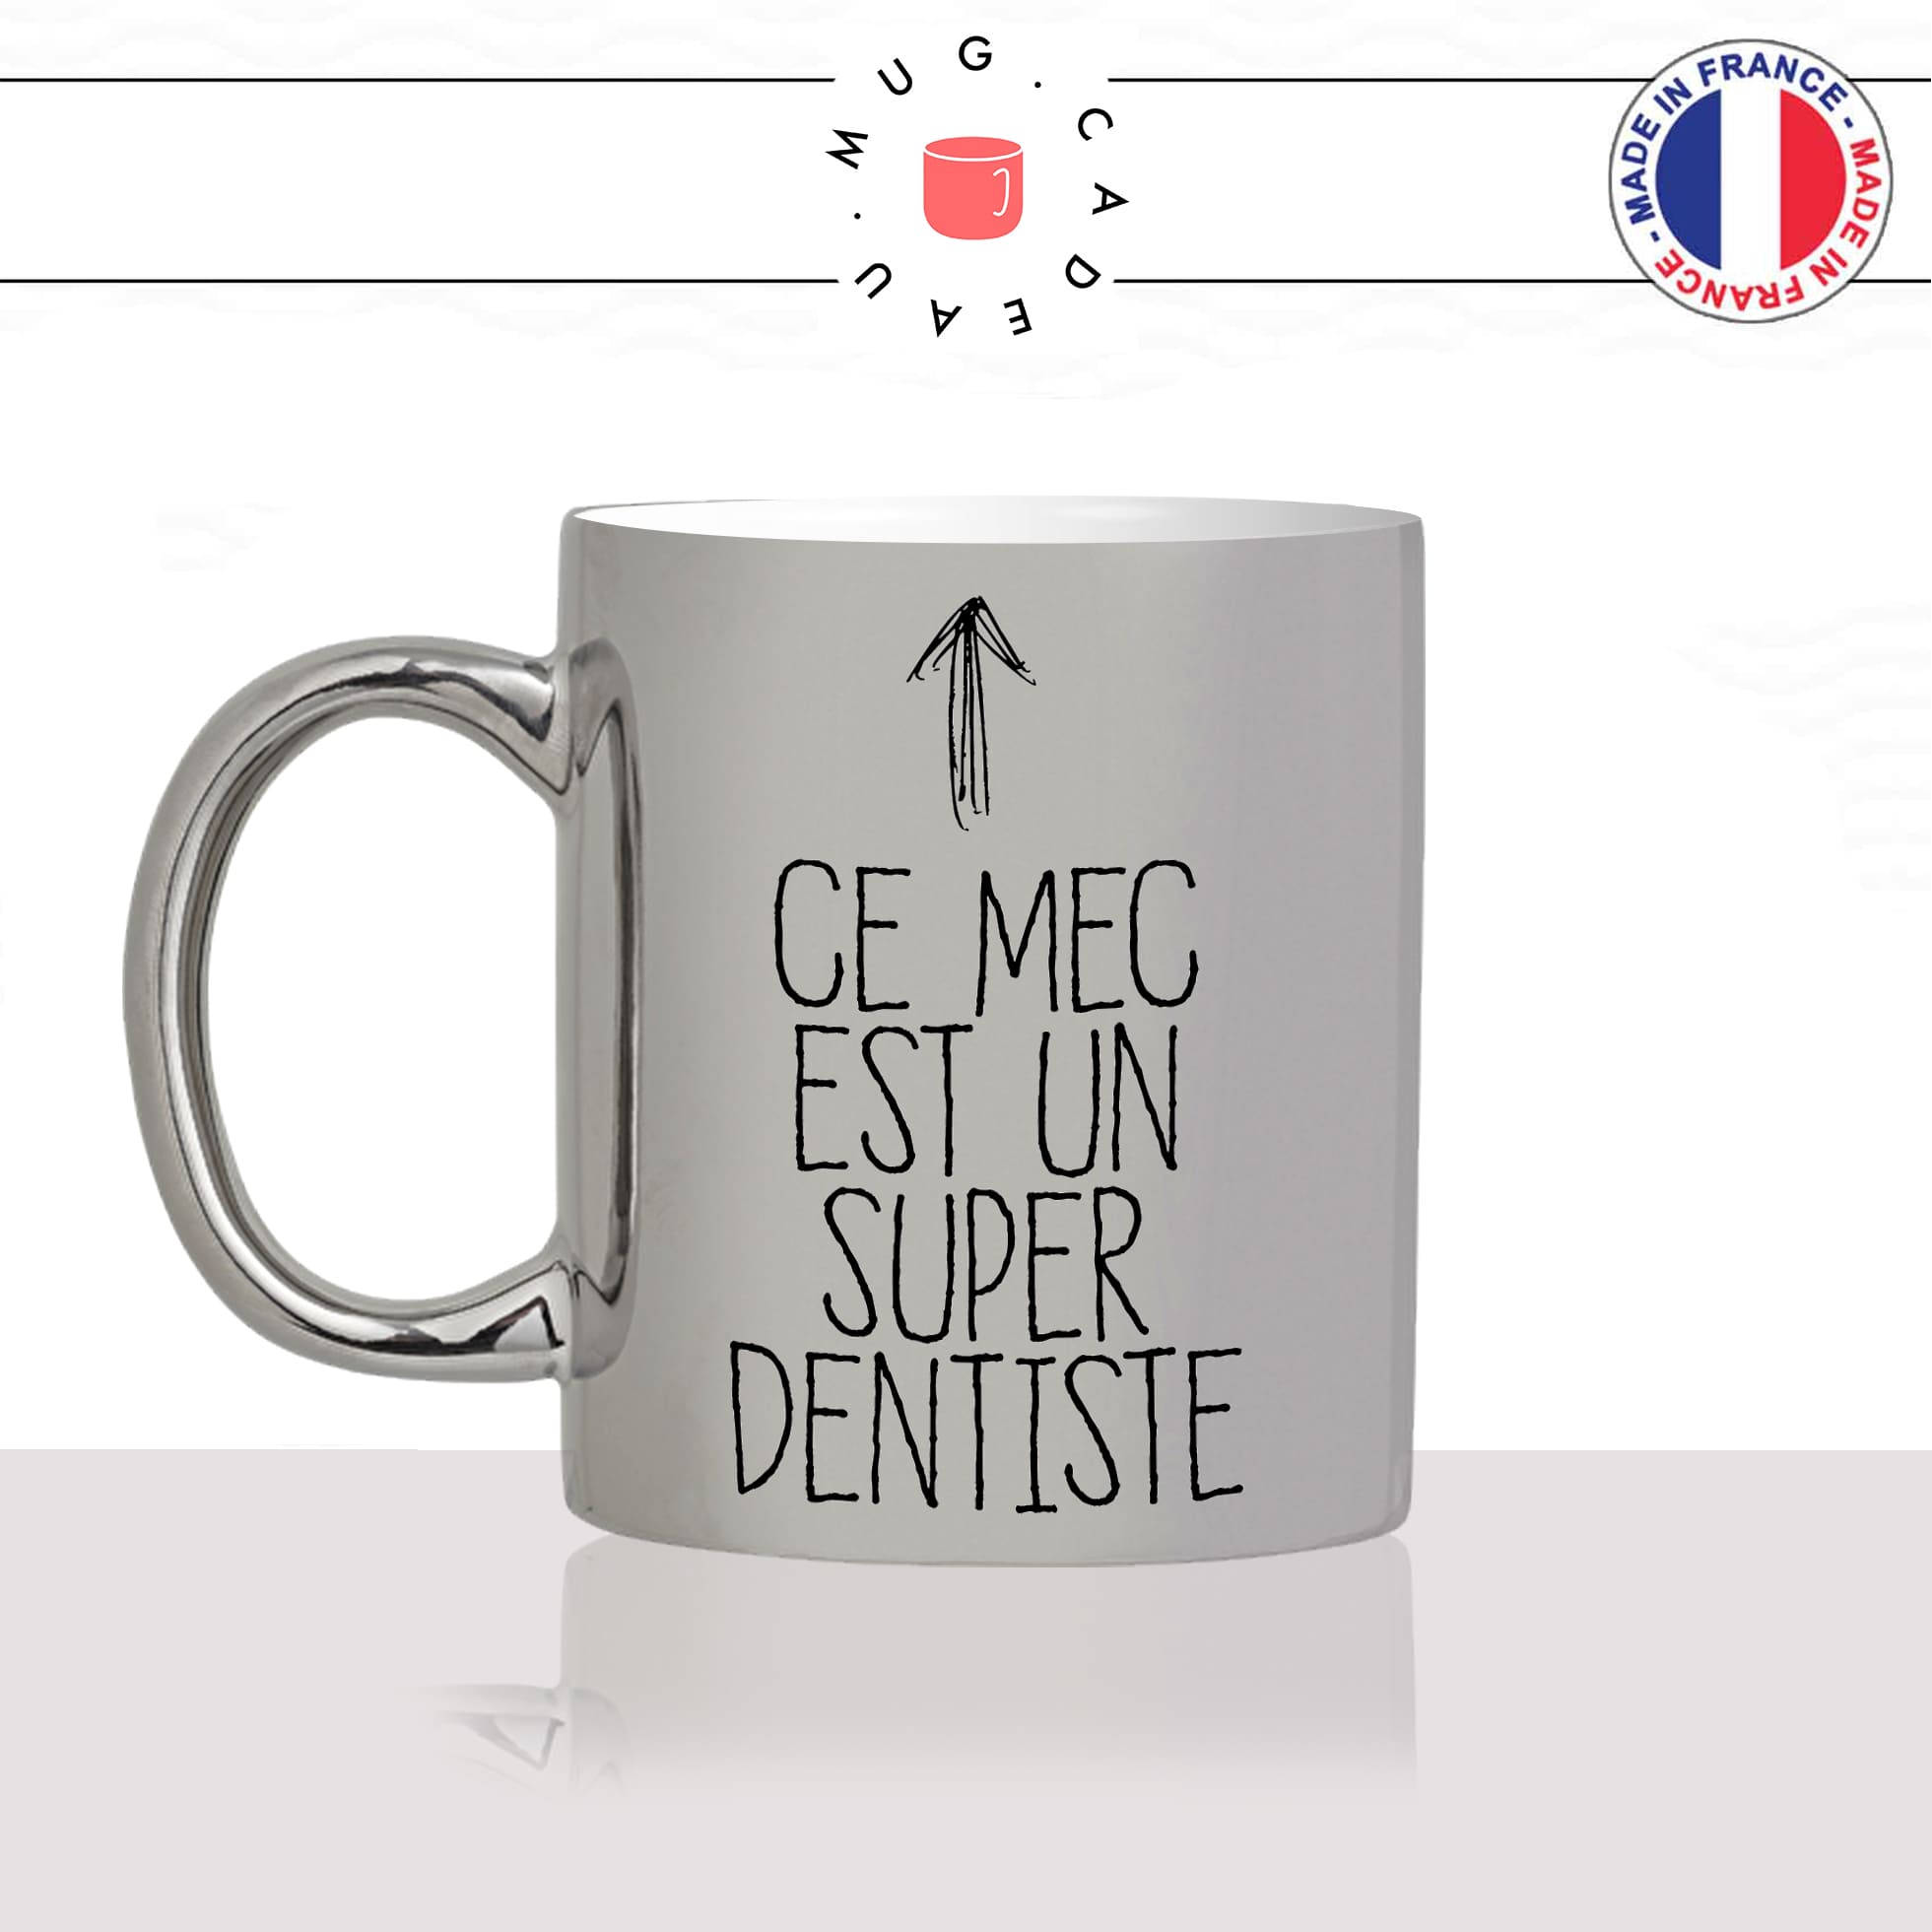 mug-tasse-argenté-silver-meilleur-ce-mec-est-un-super-dentiste-travail-medecin-dent-humour-métier-fun-café-thé-idée-cadeau-original